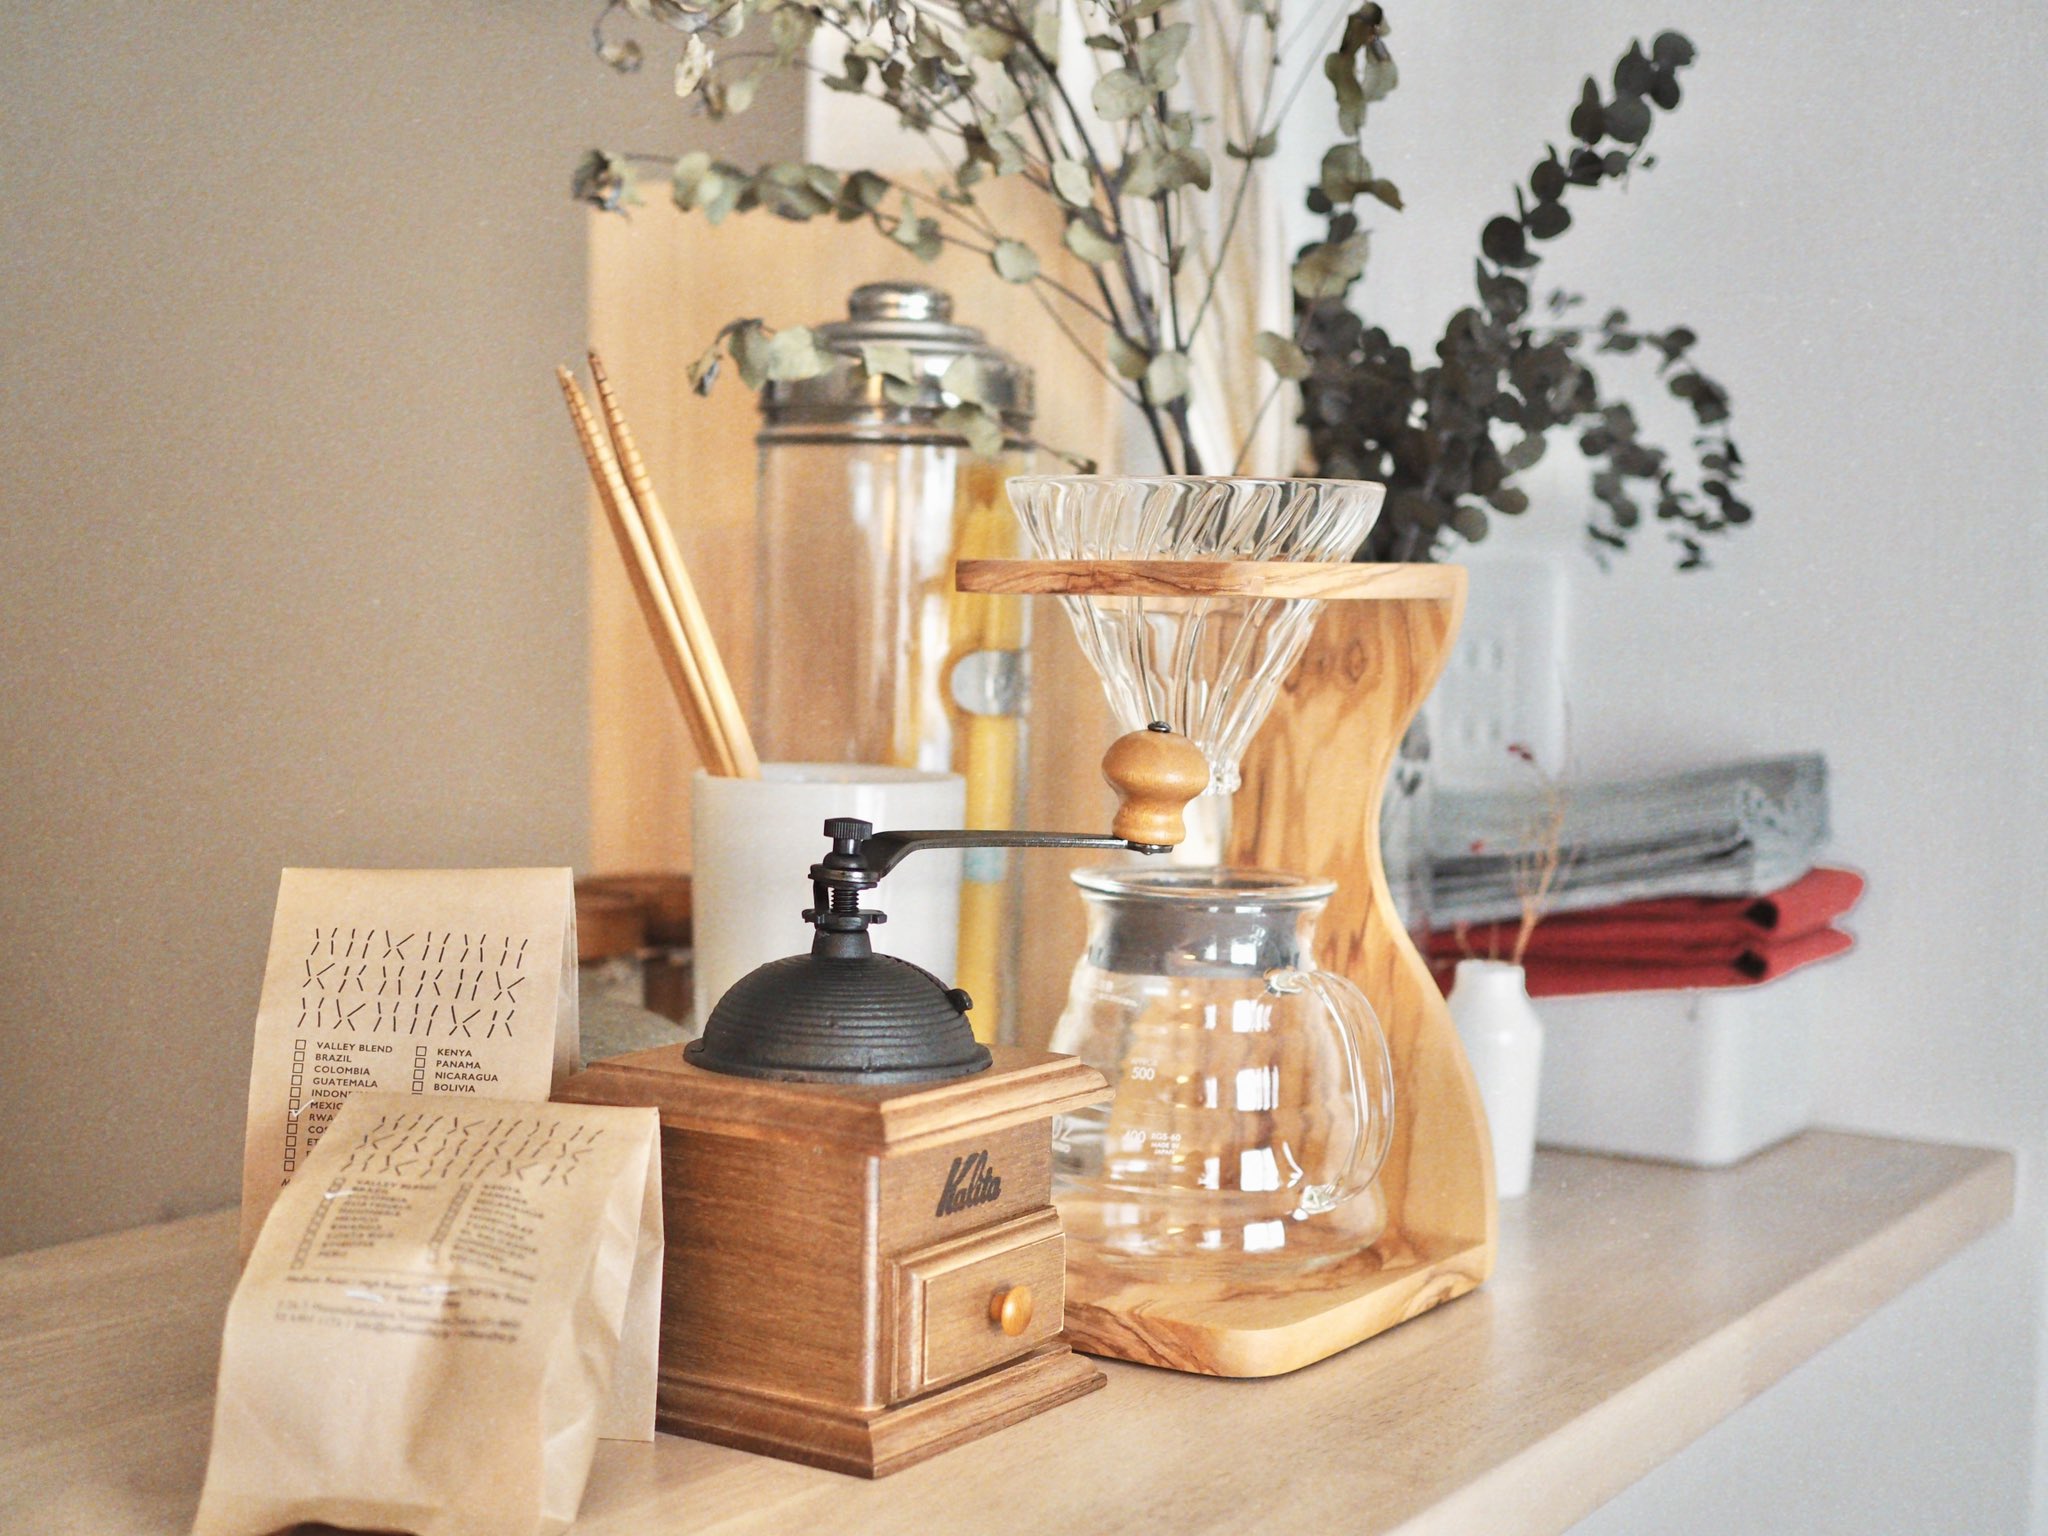 おしゃれなコーヒースタンドも、気分を上げてくれそう。インテリアとしても活躍してくれそうなのは、写真のKaritaのコーヒースタンド。木製で温かみがあっていいですよね。